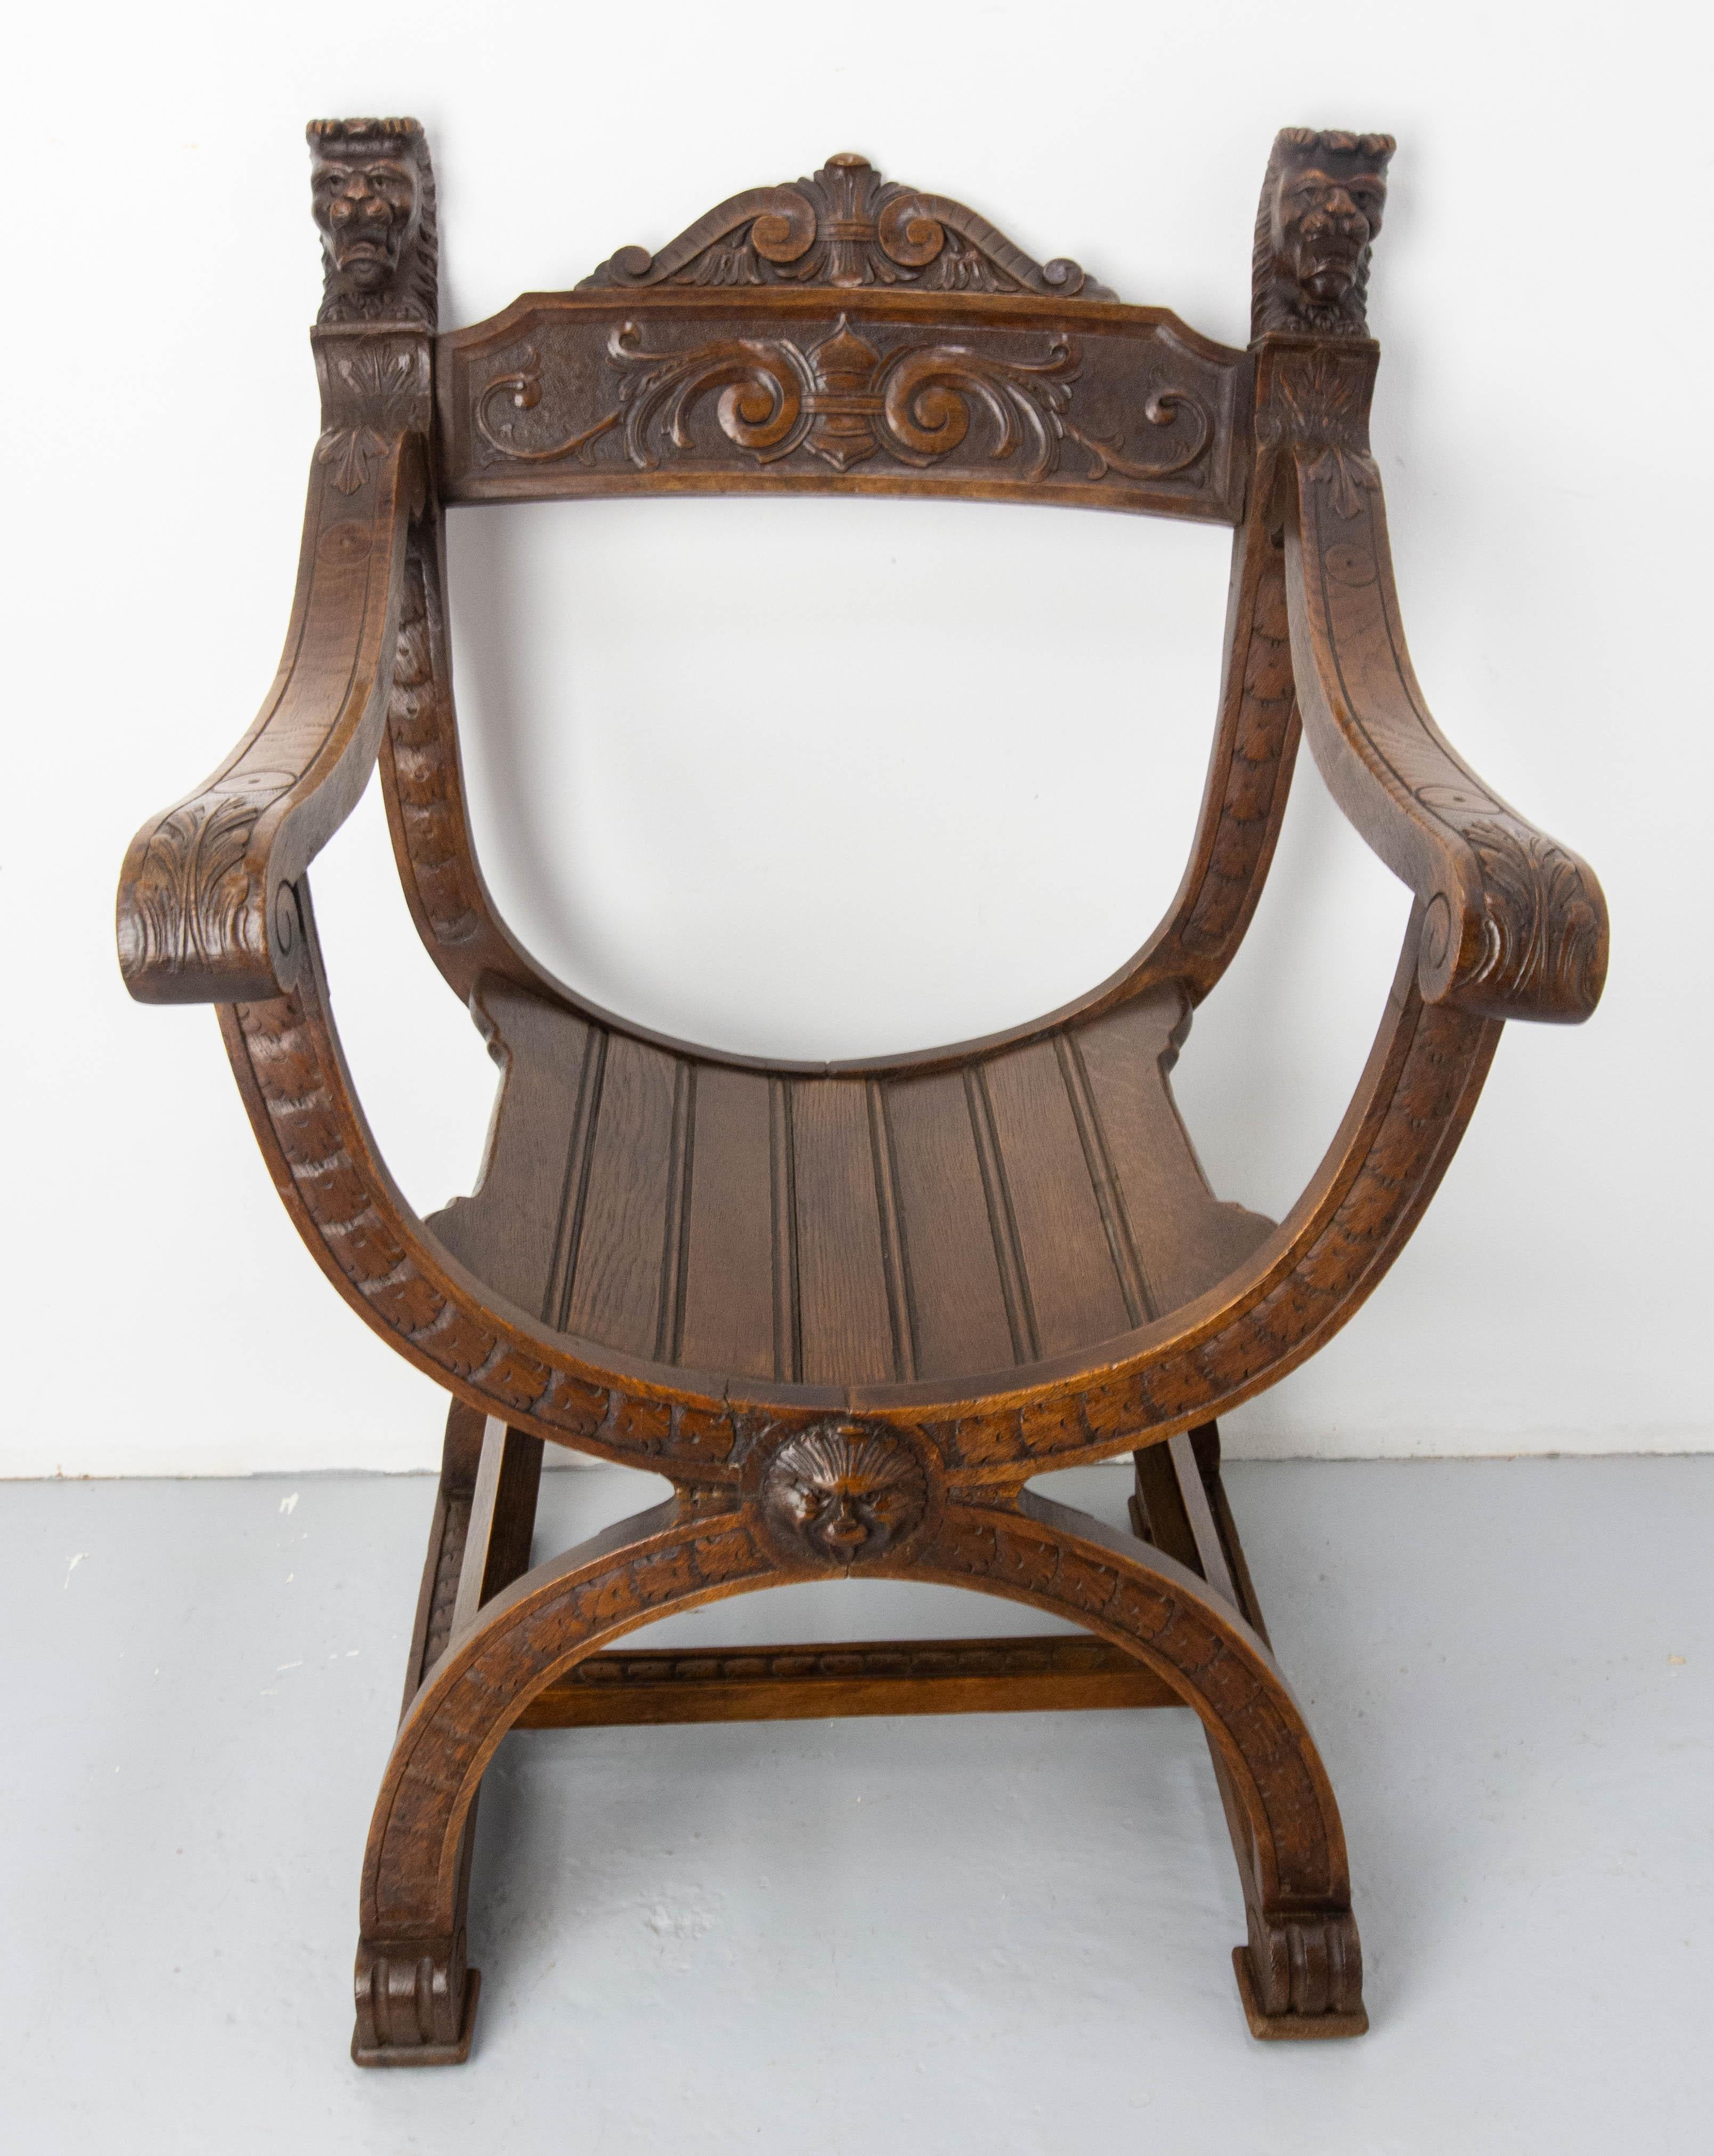 Fauteuil français sculpté dans le style néogothique. Ce type de fauteuil est appelé fauteuil Curule, en référence à l'époque romaine, ou fauteuil Dagobert.
Les meubles inspirés de la Nature sont typiques de la période de l'Art nouveau.
Les têtes de